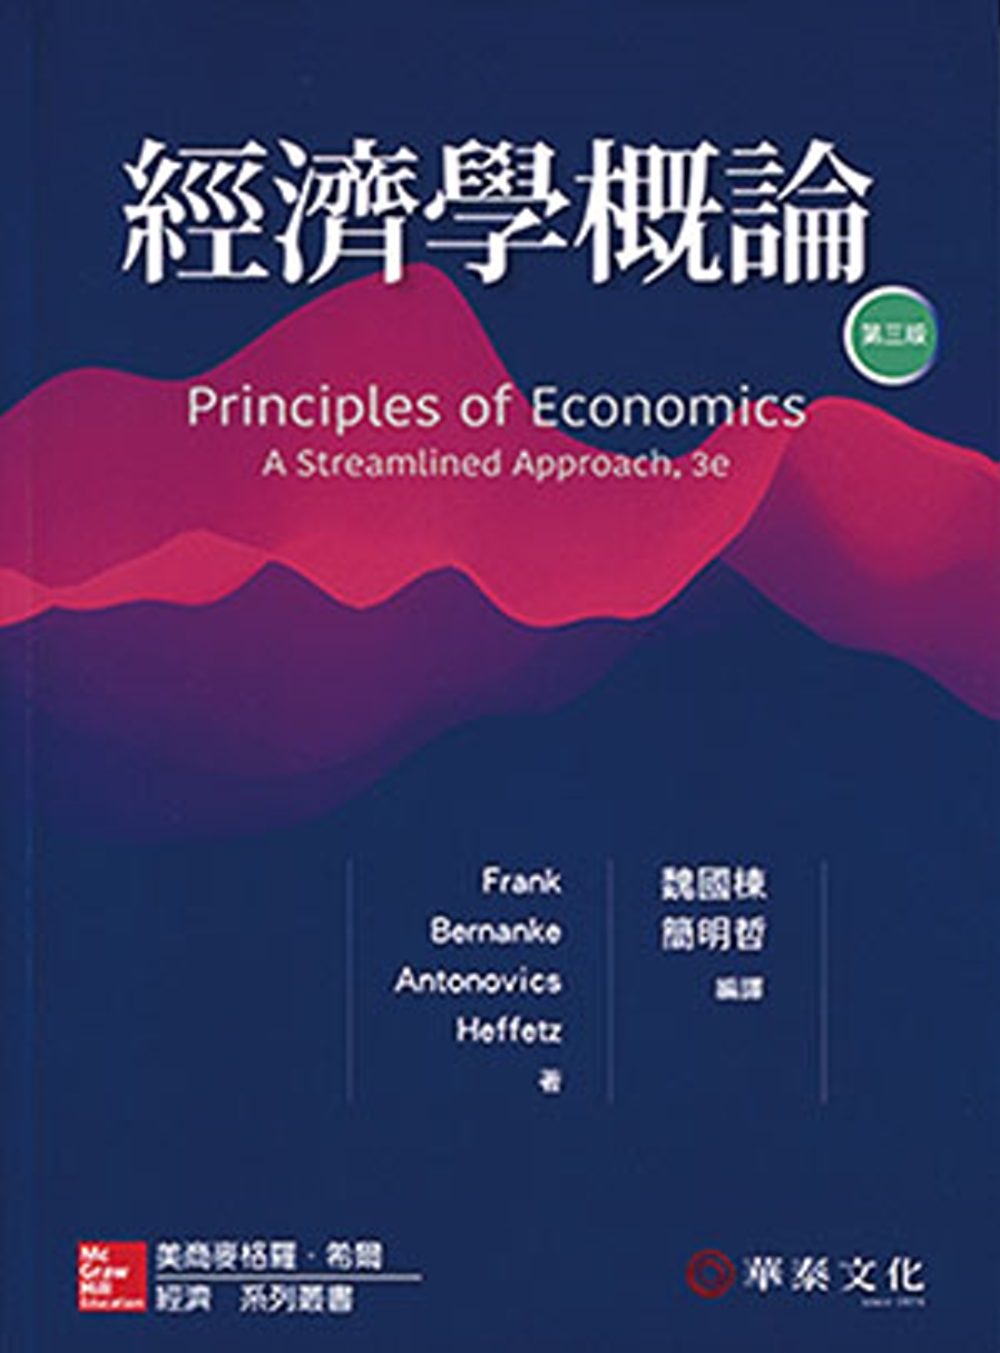 經濟學概論（Frank/Principles